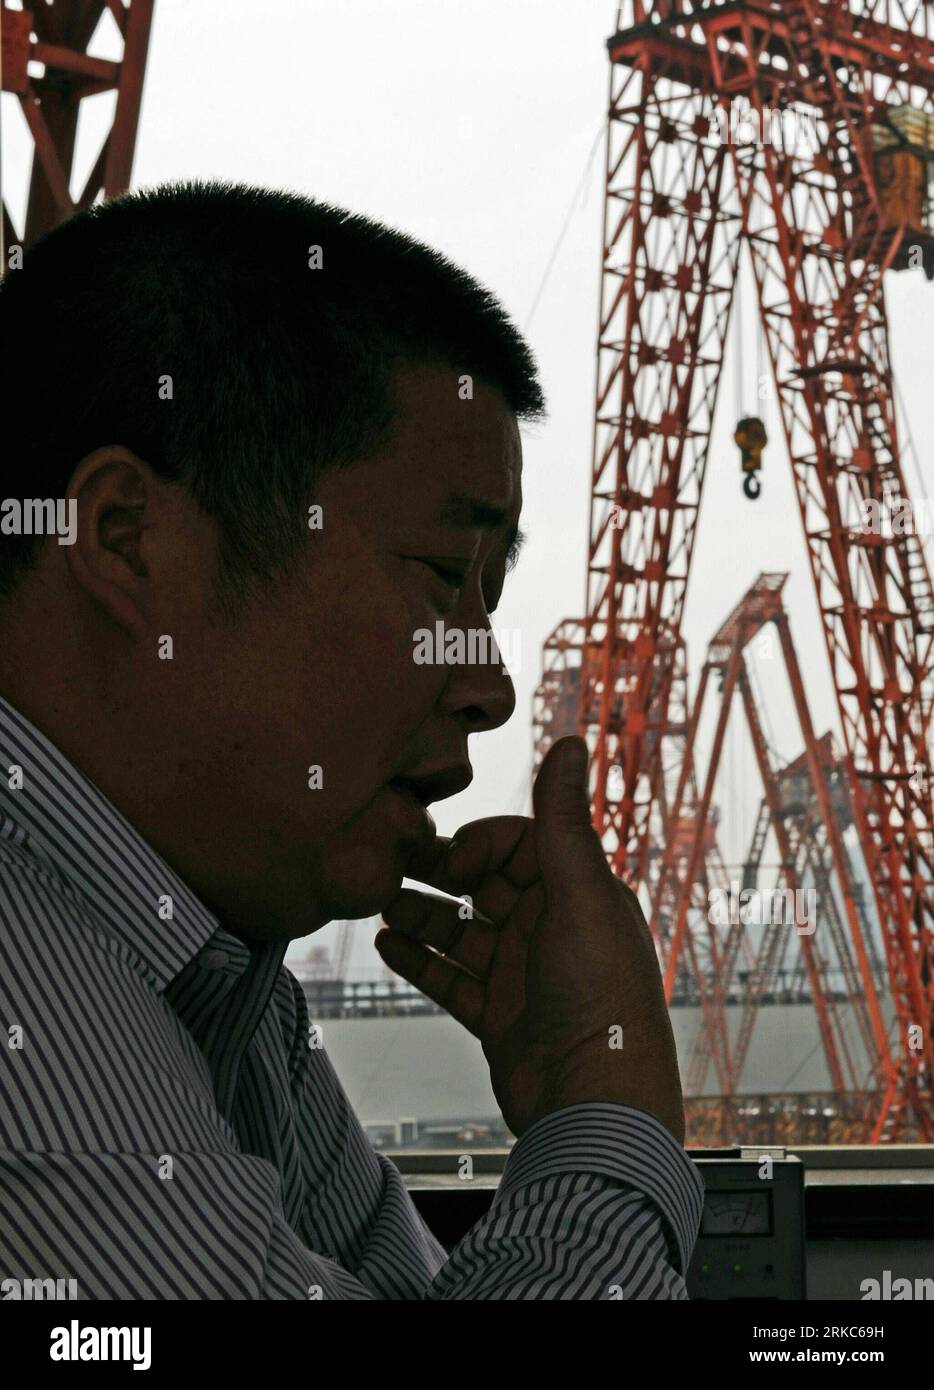 Bildnummer : 54678828 Datum : 28.09.2010 Copyright : imago/Xinhua (101126) -- TAIZHOU, 26 novembre 2010 (Xinhua) -- le propriétaire d'un chantier naval privé Li Changxian est vu à son chantier naval dans la ville de Taizhou, dans la province du Zhejiang de l'est de la Chine, le 28 septembre 2010. En plus de 40 ans, l'océan vaste et profond a donné à Li Changxian tout sauf les soucis. Mais depuis le début de la crise financière mondiale il y a deux ans, le milliardaire de 44 ans est tombé dans le blues. Debout dans le chantier naval autrefois animé de Hongda qu'il dirigeait à Taizhou, Li Changxian posa sa main sur la coque rouillée d'un navire inachevé et s'interrogea Banque D'Images